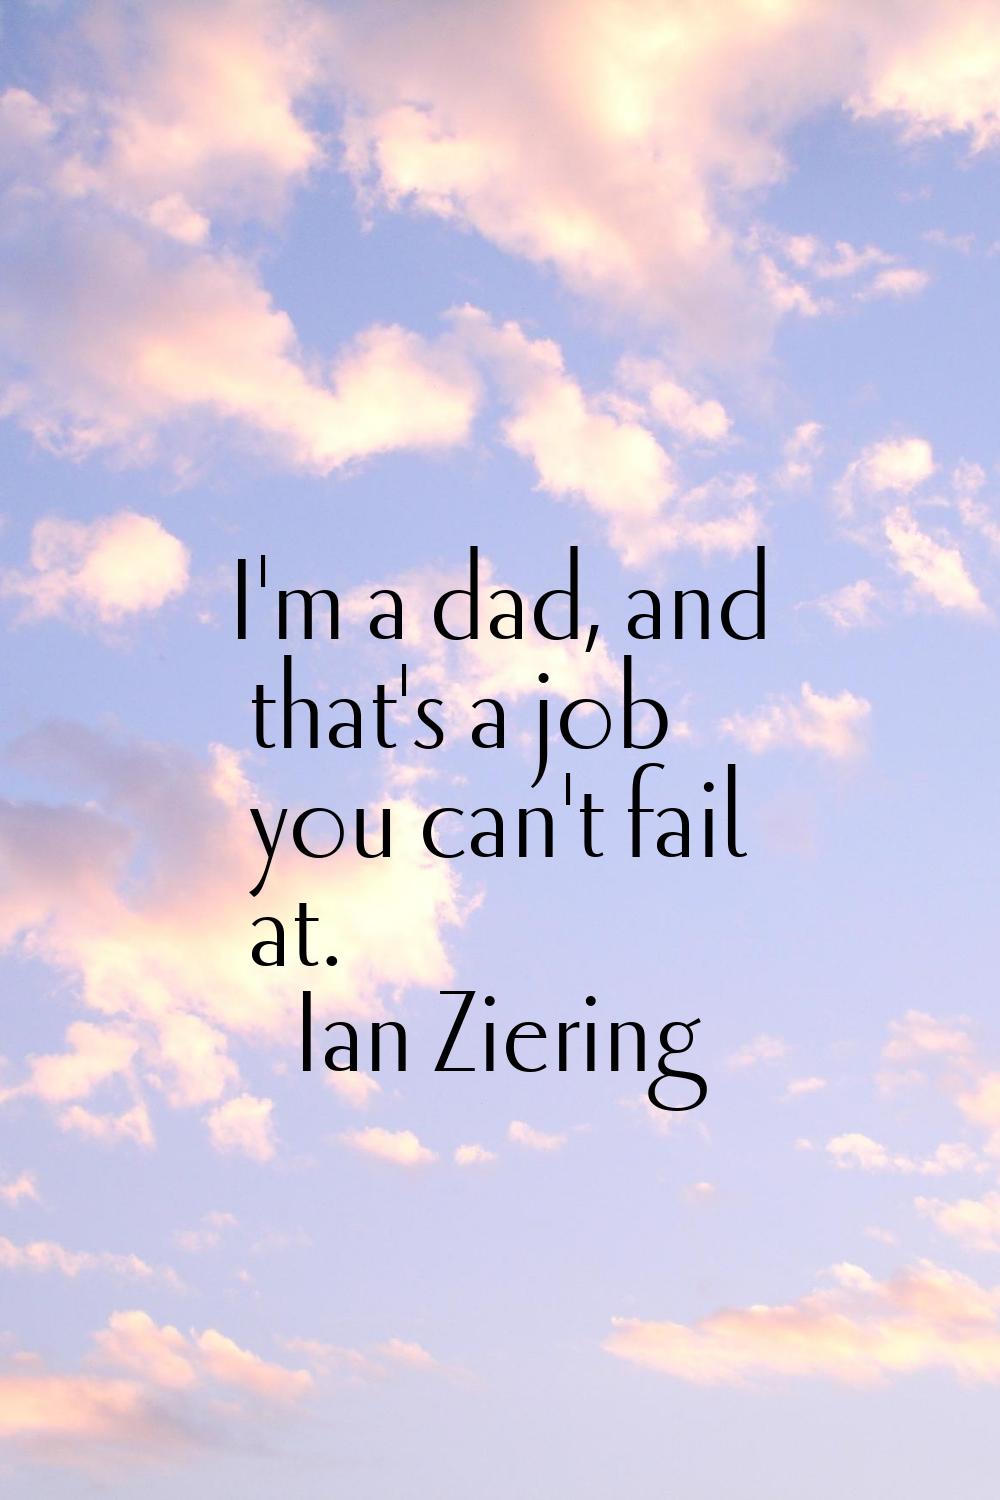 I'm a dad, and that's a job you can't fail at.